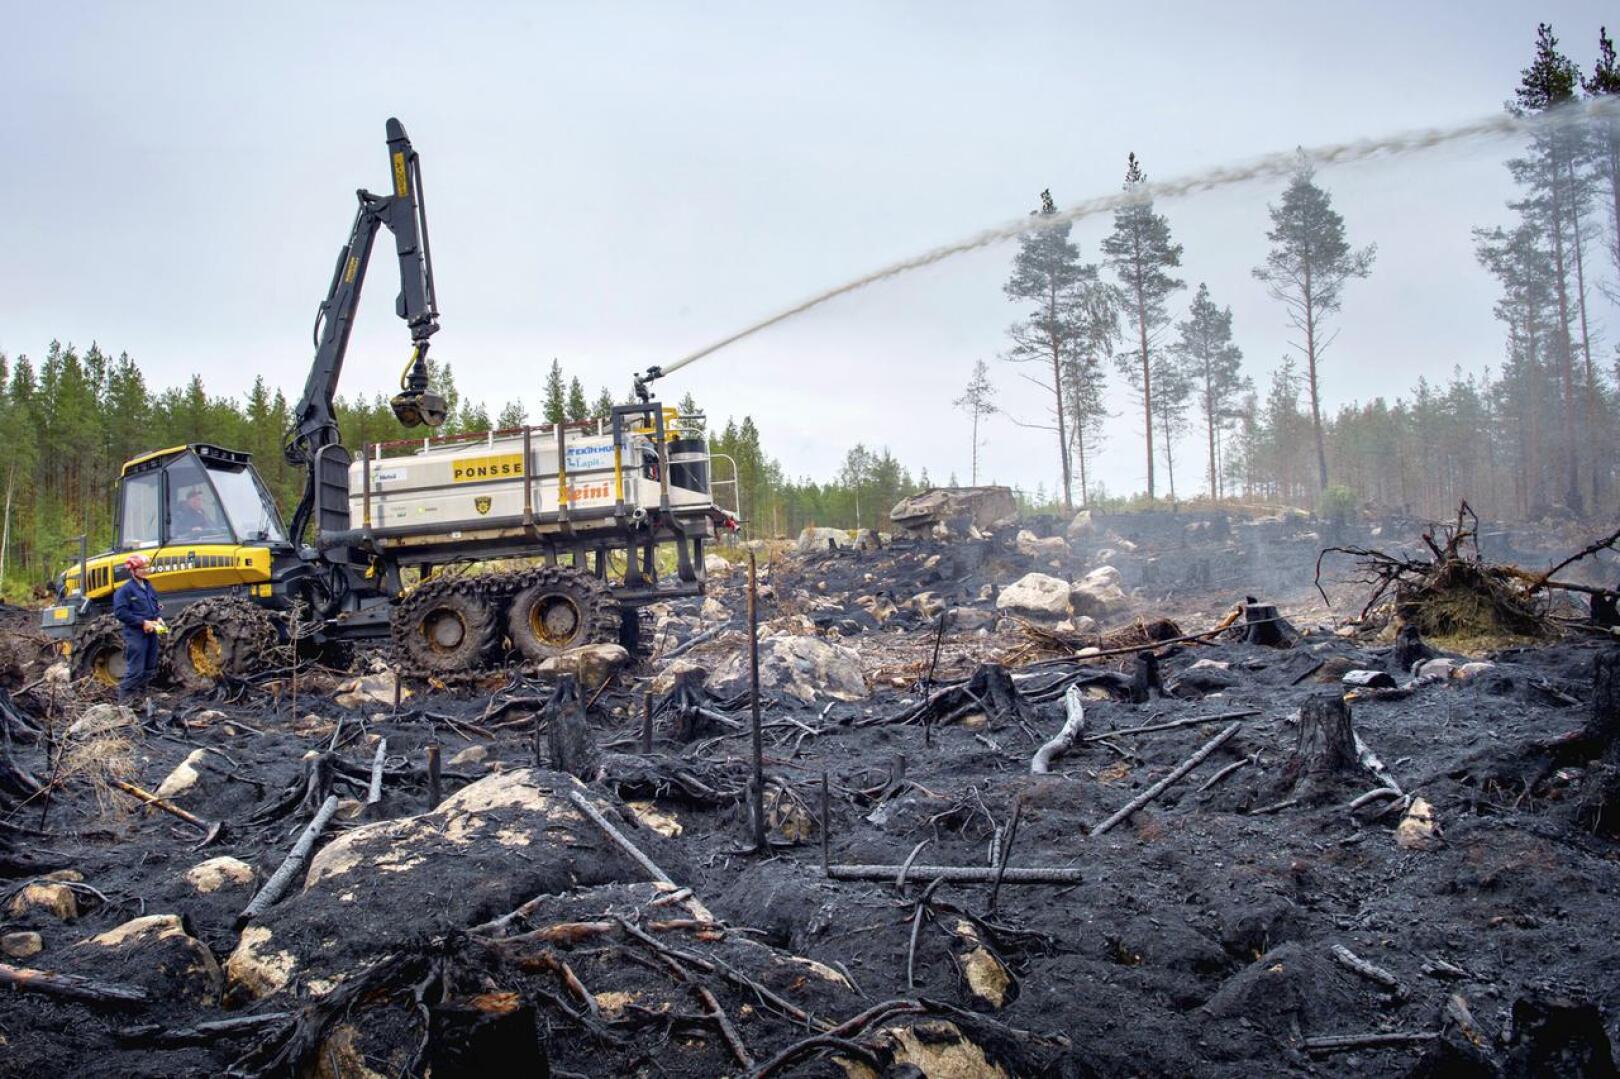 Yhdestä Suomen suurimmasta palosta aiheutuneet kustannukset nousivat 2,3 miljoonaan euroon, josta valtio korvasi 1,6 miljoonaa. Loppu jää rasittamaan pelastuslaitoksen taloutta.